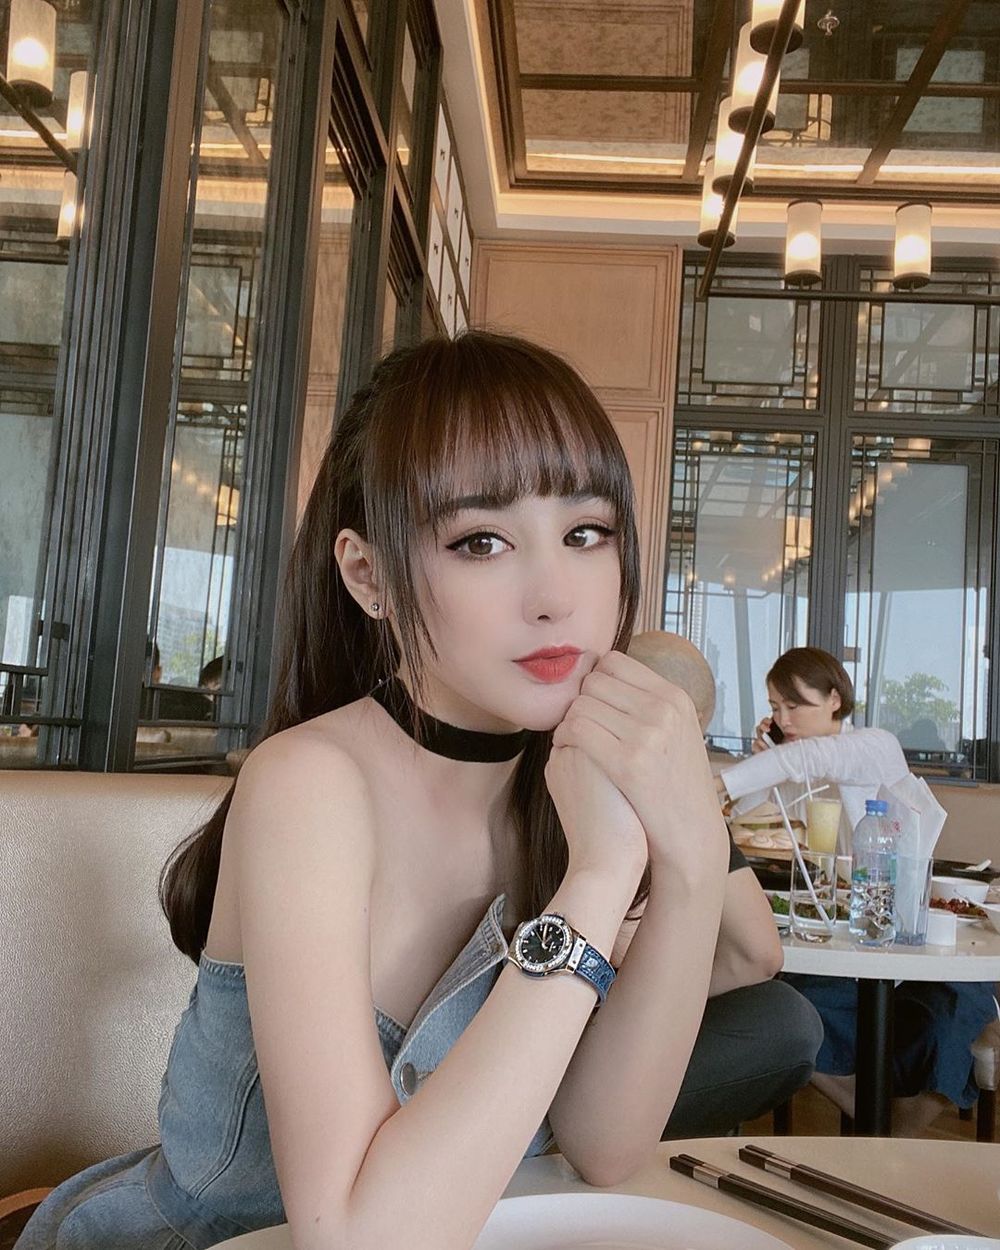  
Người đẹp đeo đồng hồ nạm kim cương đi ăn trưa. (Ảnh: Instagram nhân vật)